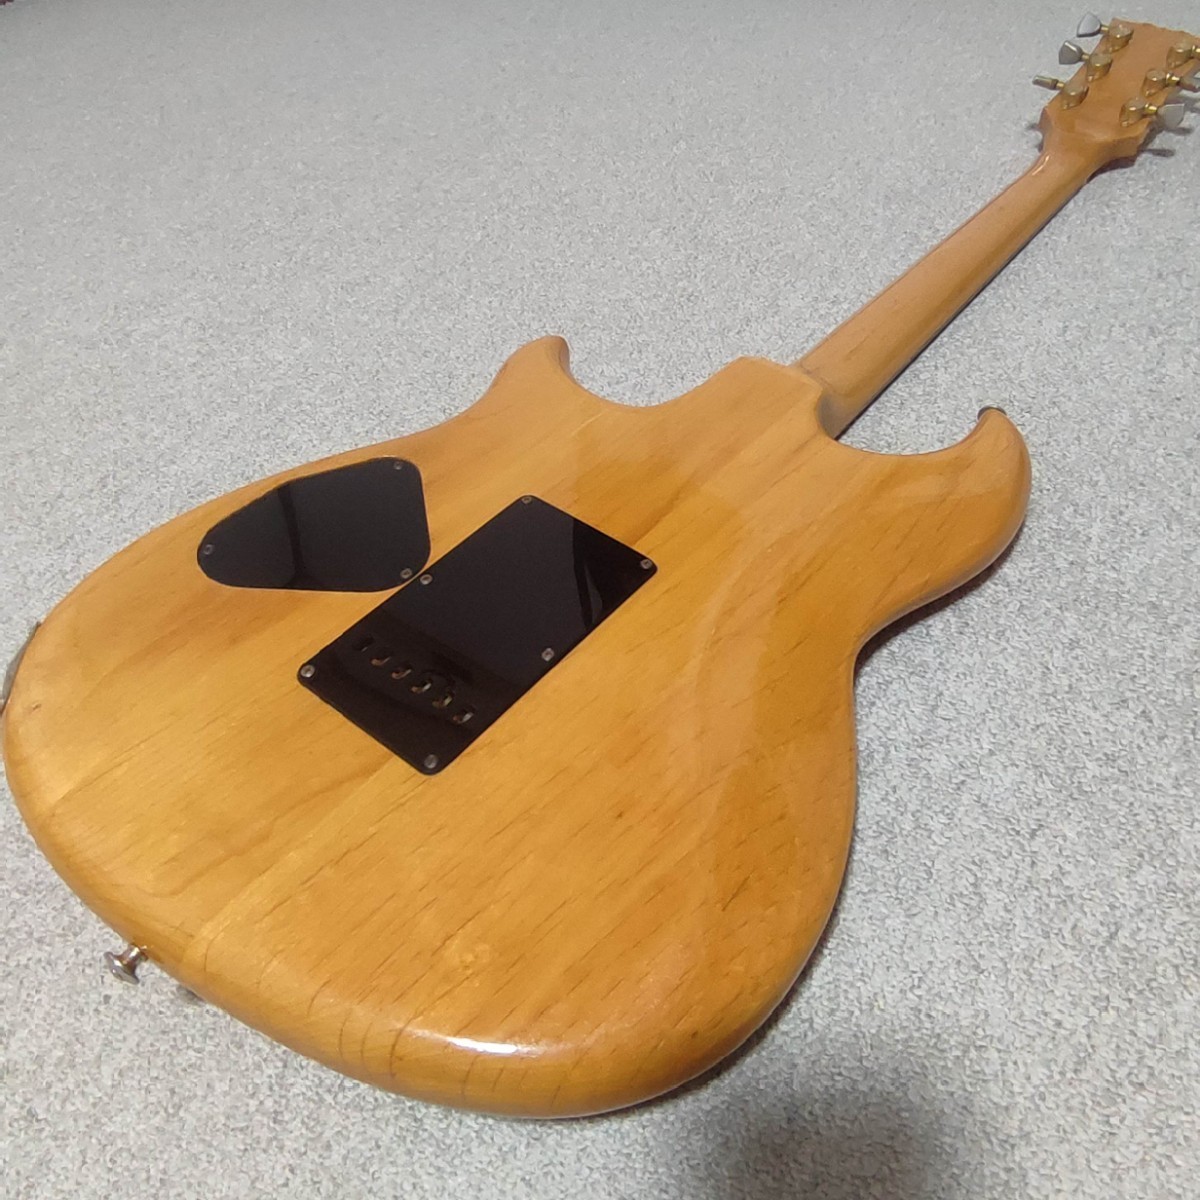 YAMAHA SC-5000 80年代 ジャパンビンテージ セットネック Fender Gibson PRS お探しの方へもオススメ!!_画像10